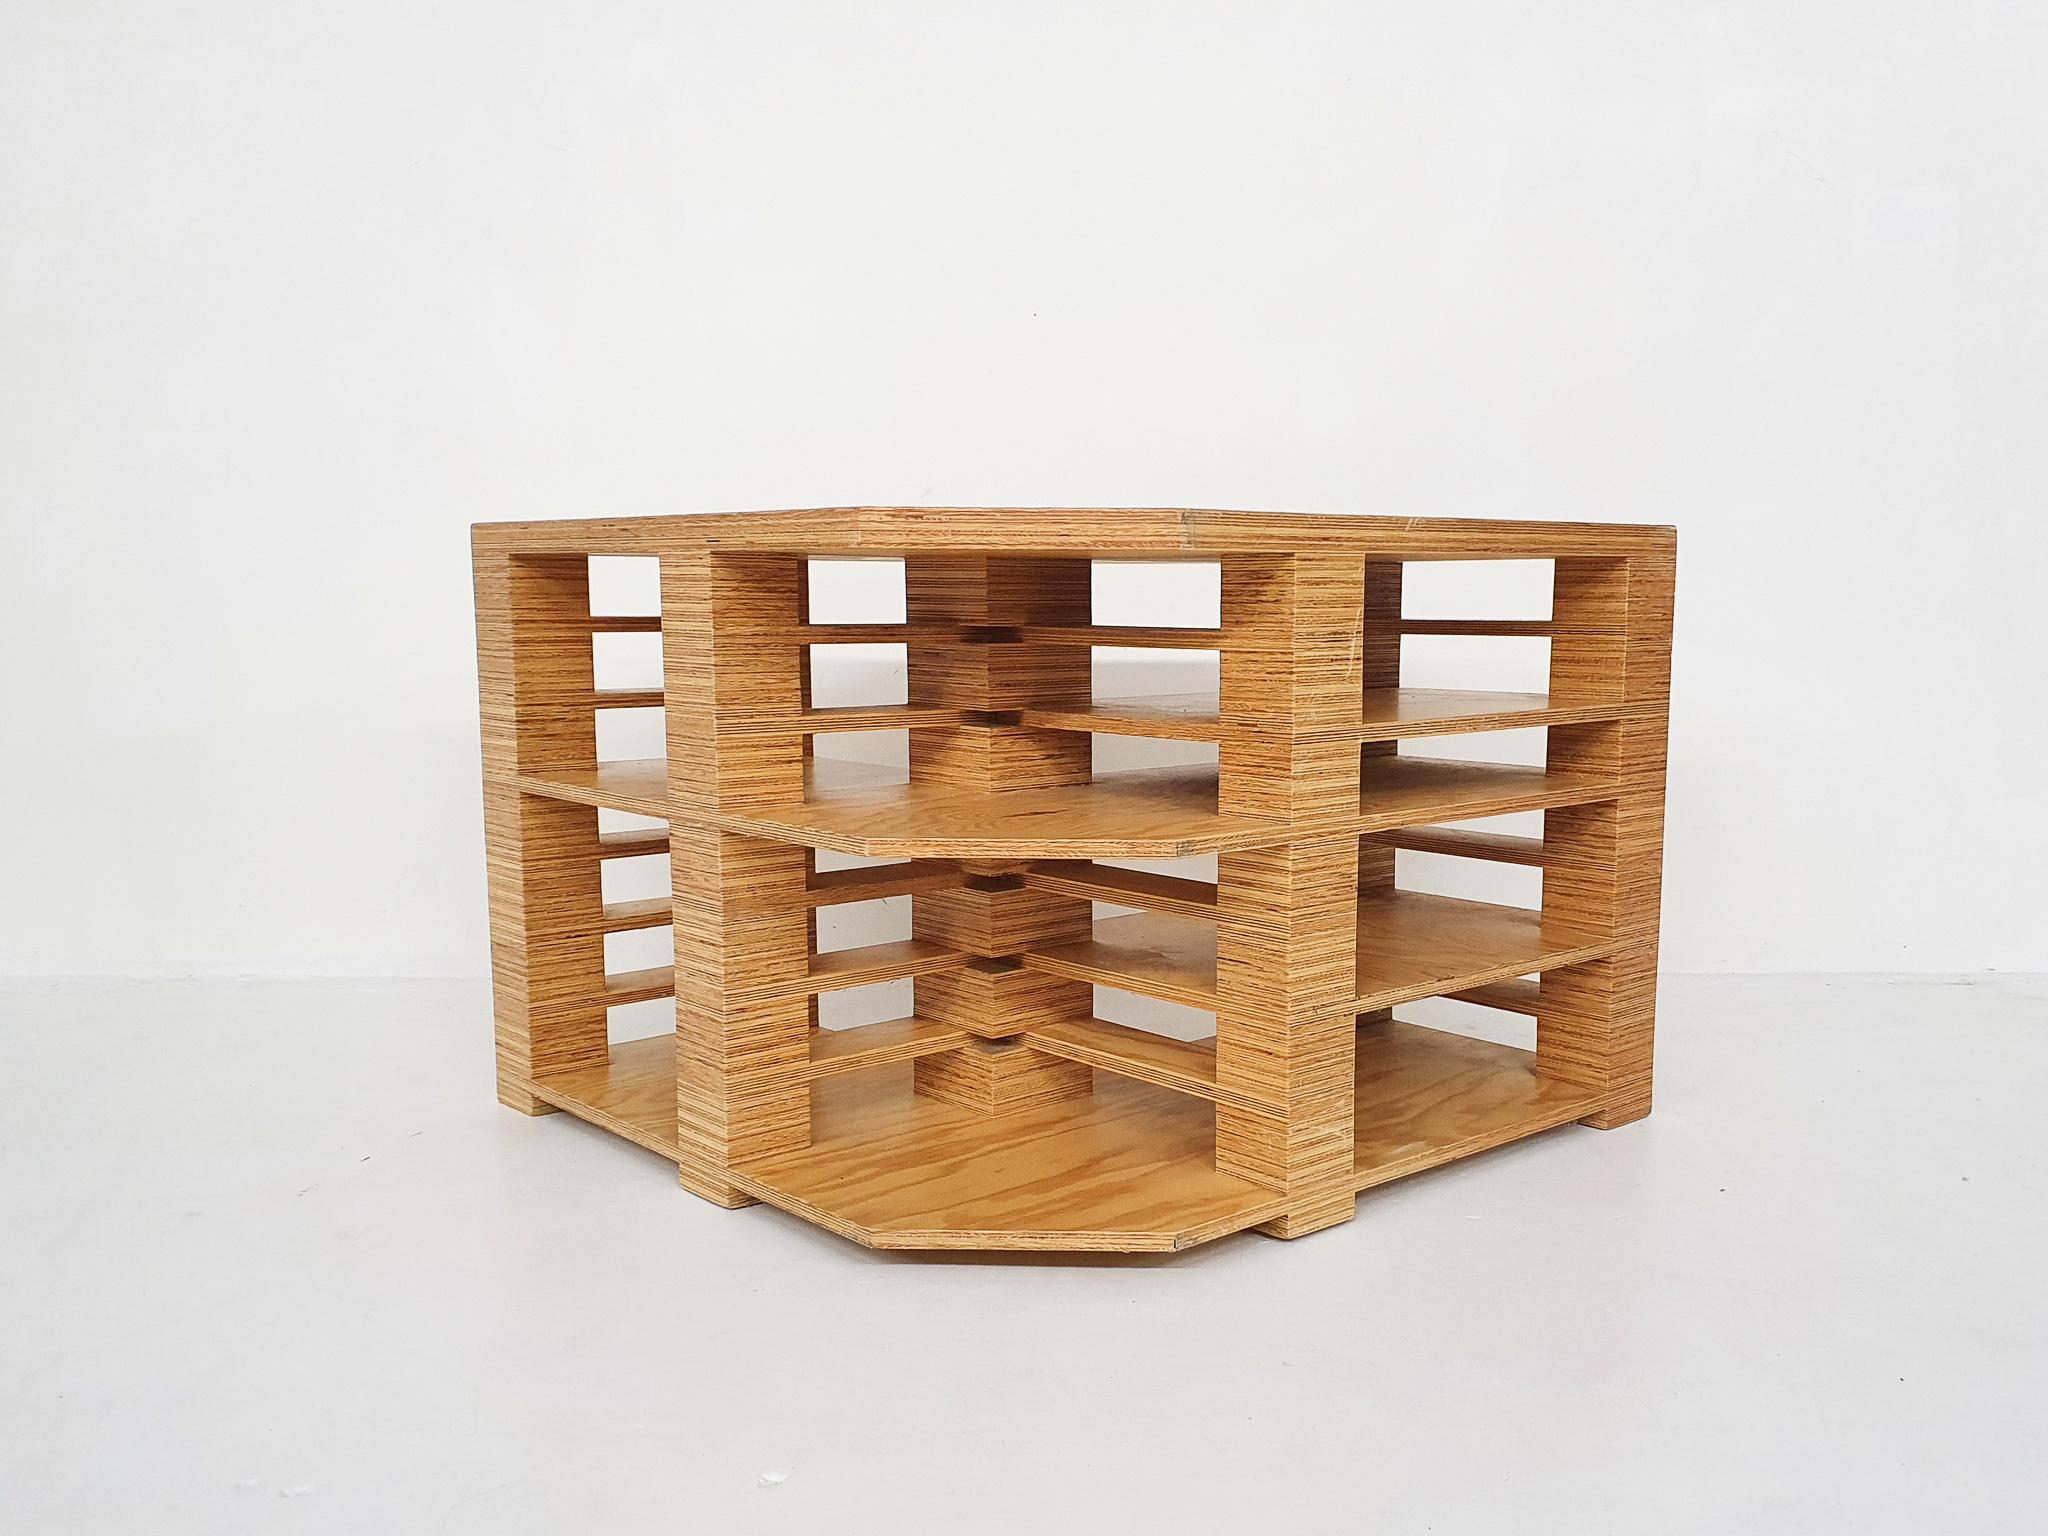 Schreibtisch aus Sperrholz, der freistehend oder in einer Ecke aufgestellt werden kann. Entworfen in den Niederlanden, wahrscheinlich in den achtziger Jahren
Sehr schön aus Sperrholz verleimt, um mehrere Ablageflächen zu schaffen. Es werden